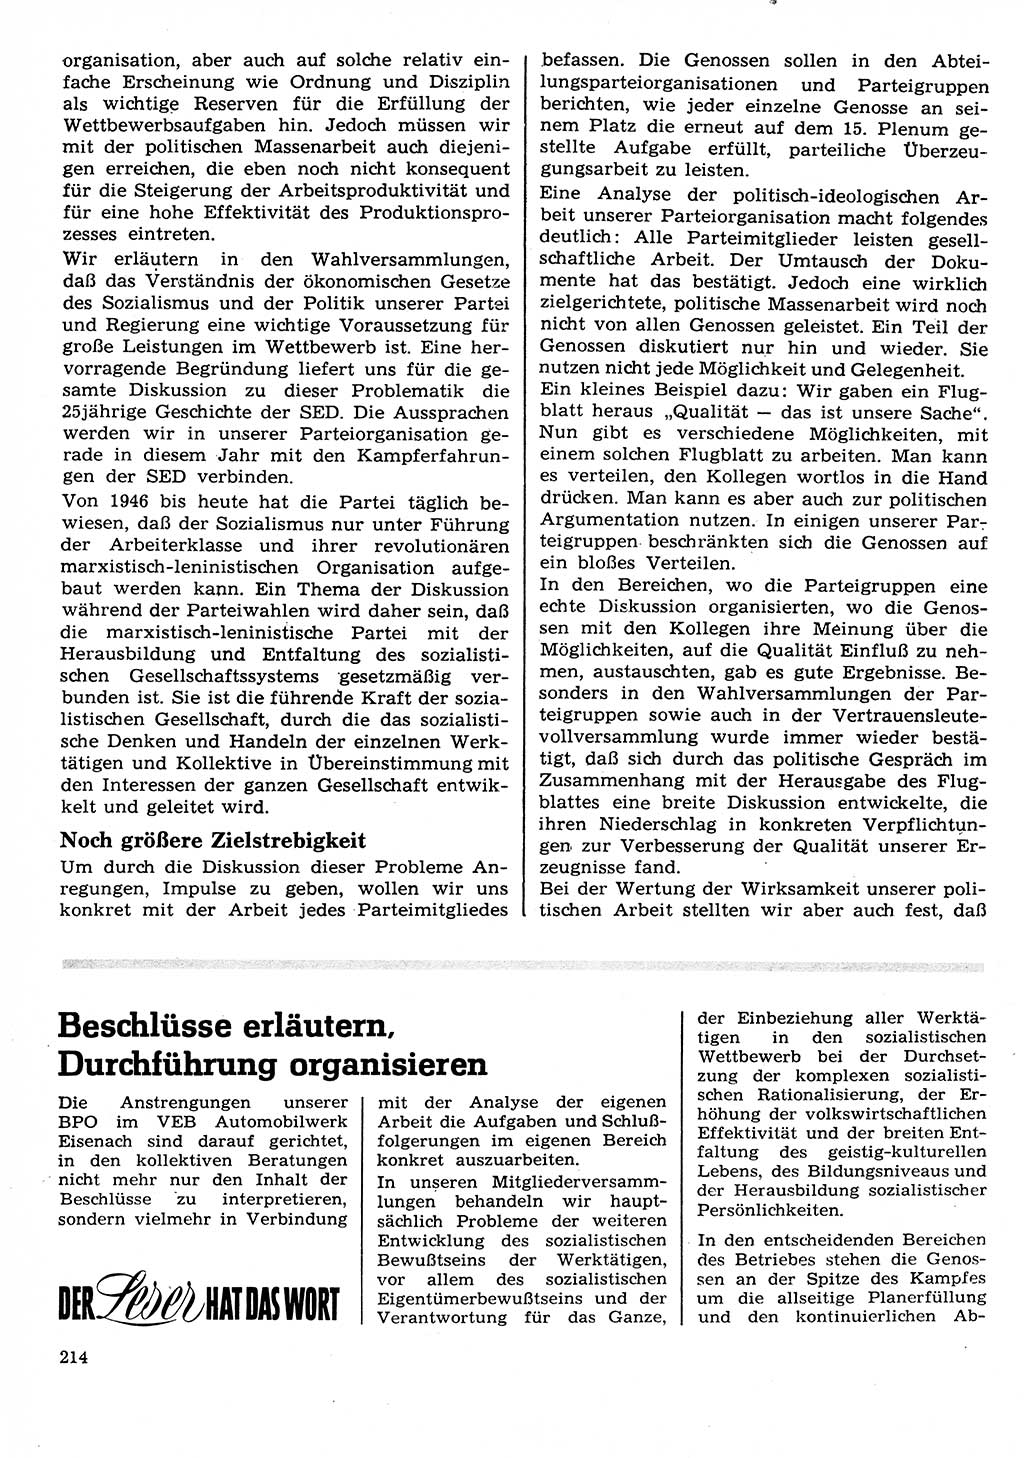 Neuer Weg (NW), Organ des Zentralkomitees (ZK) der SED (Sozialistische Einheitspartei Deutschlands) für Fragen des Parteilebens, 26. Jahrgang [Deutsche Demokratische Republik (DDR)] 1971, Seite 214 (NW ZK SED DDR 1971, S. 214)